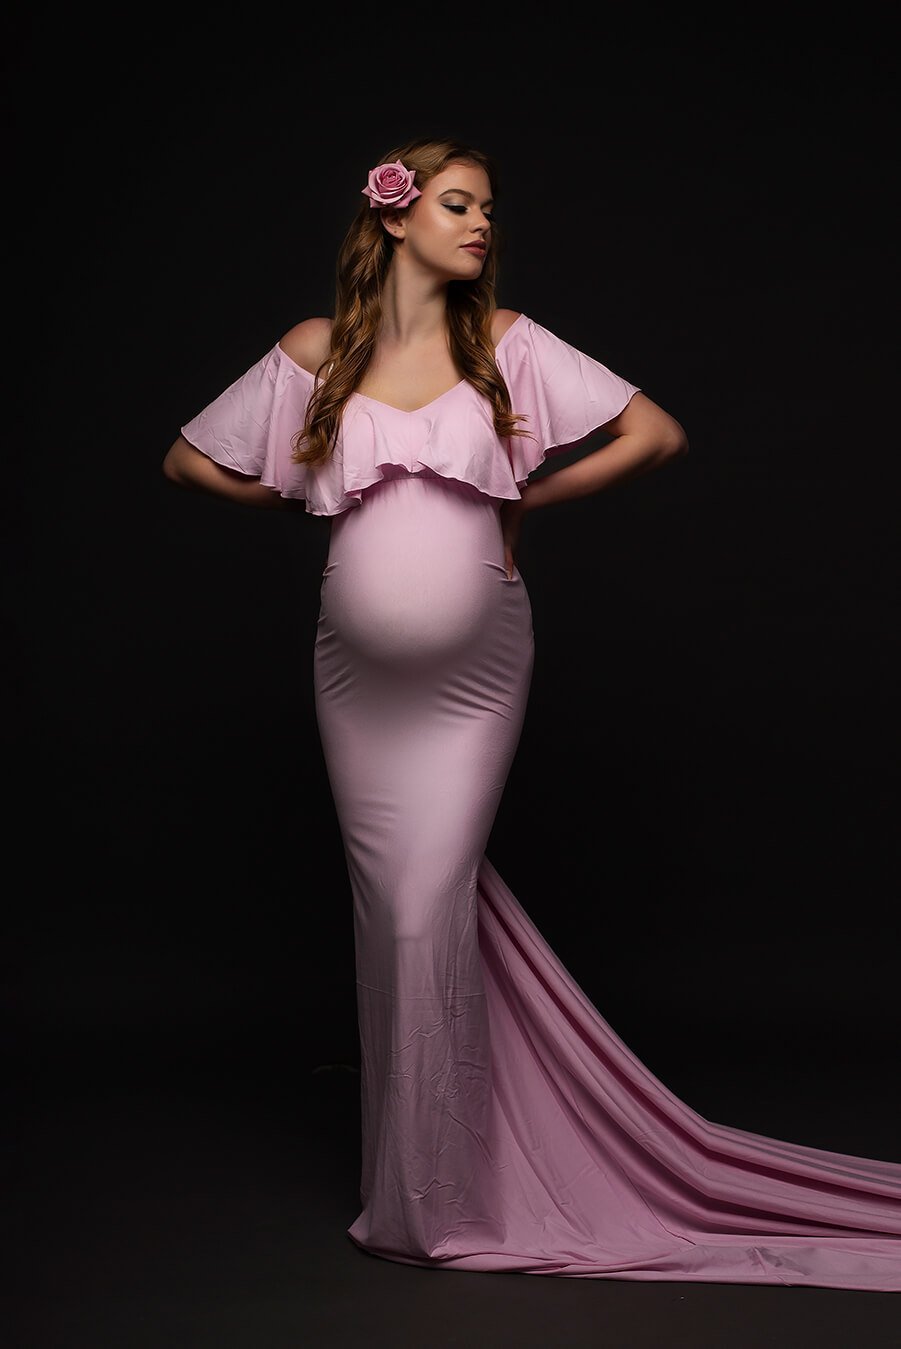 Peregrine Maternity Dress Light Pink CLEARANCE SALE - Mii-Estilo.com